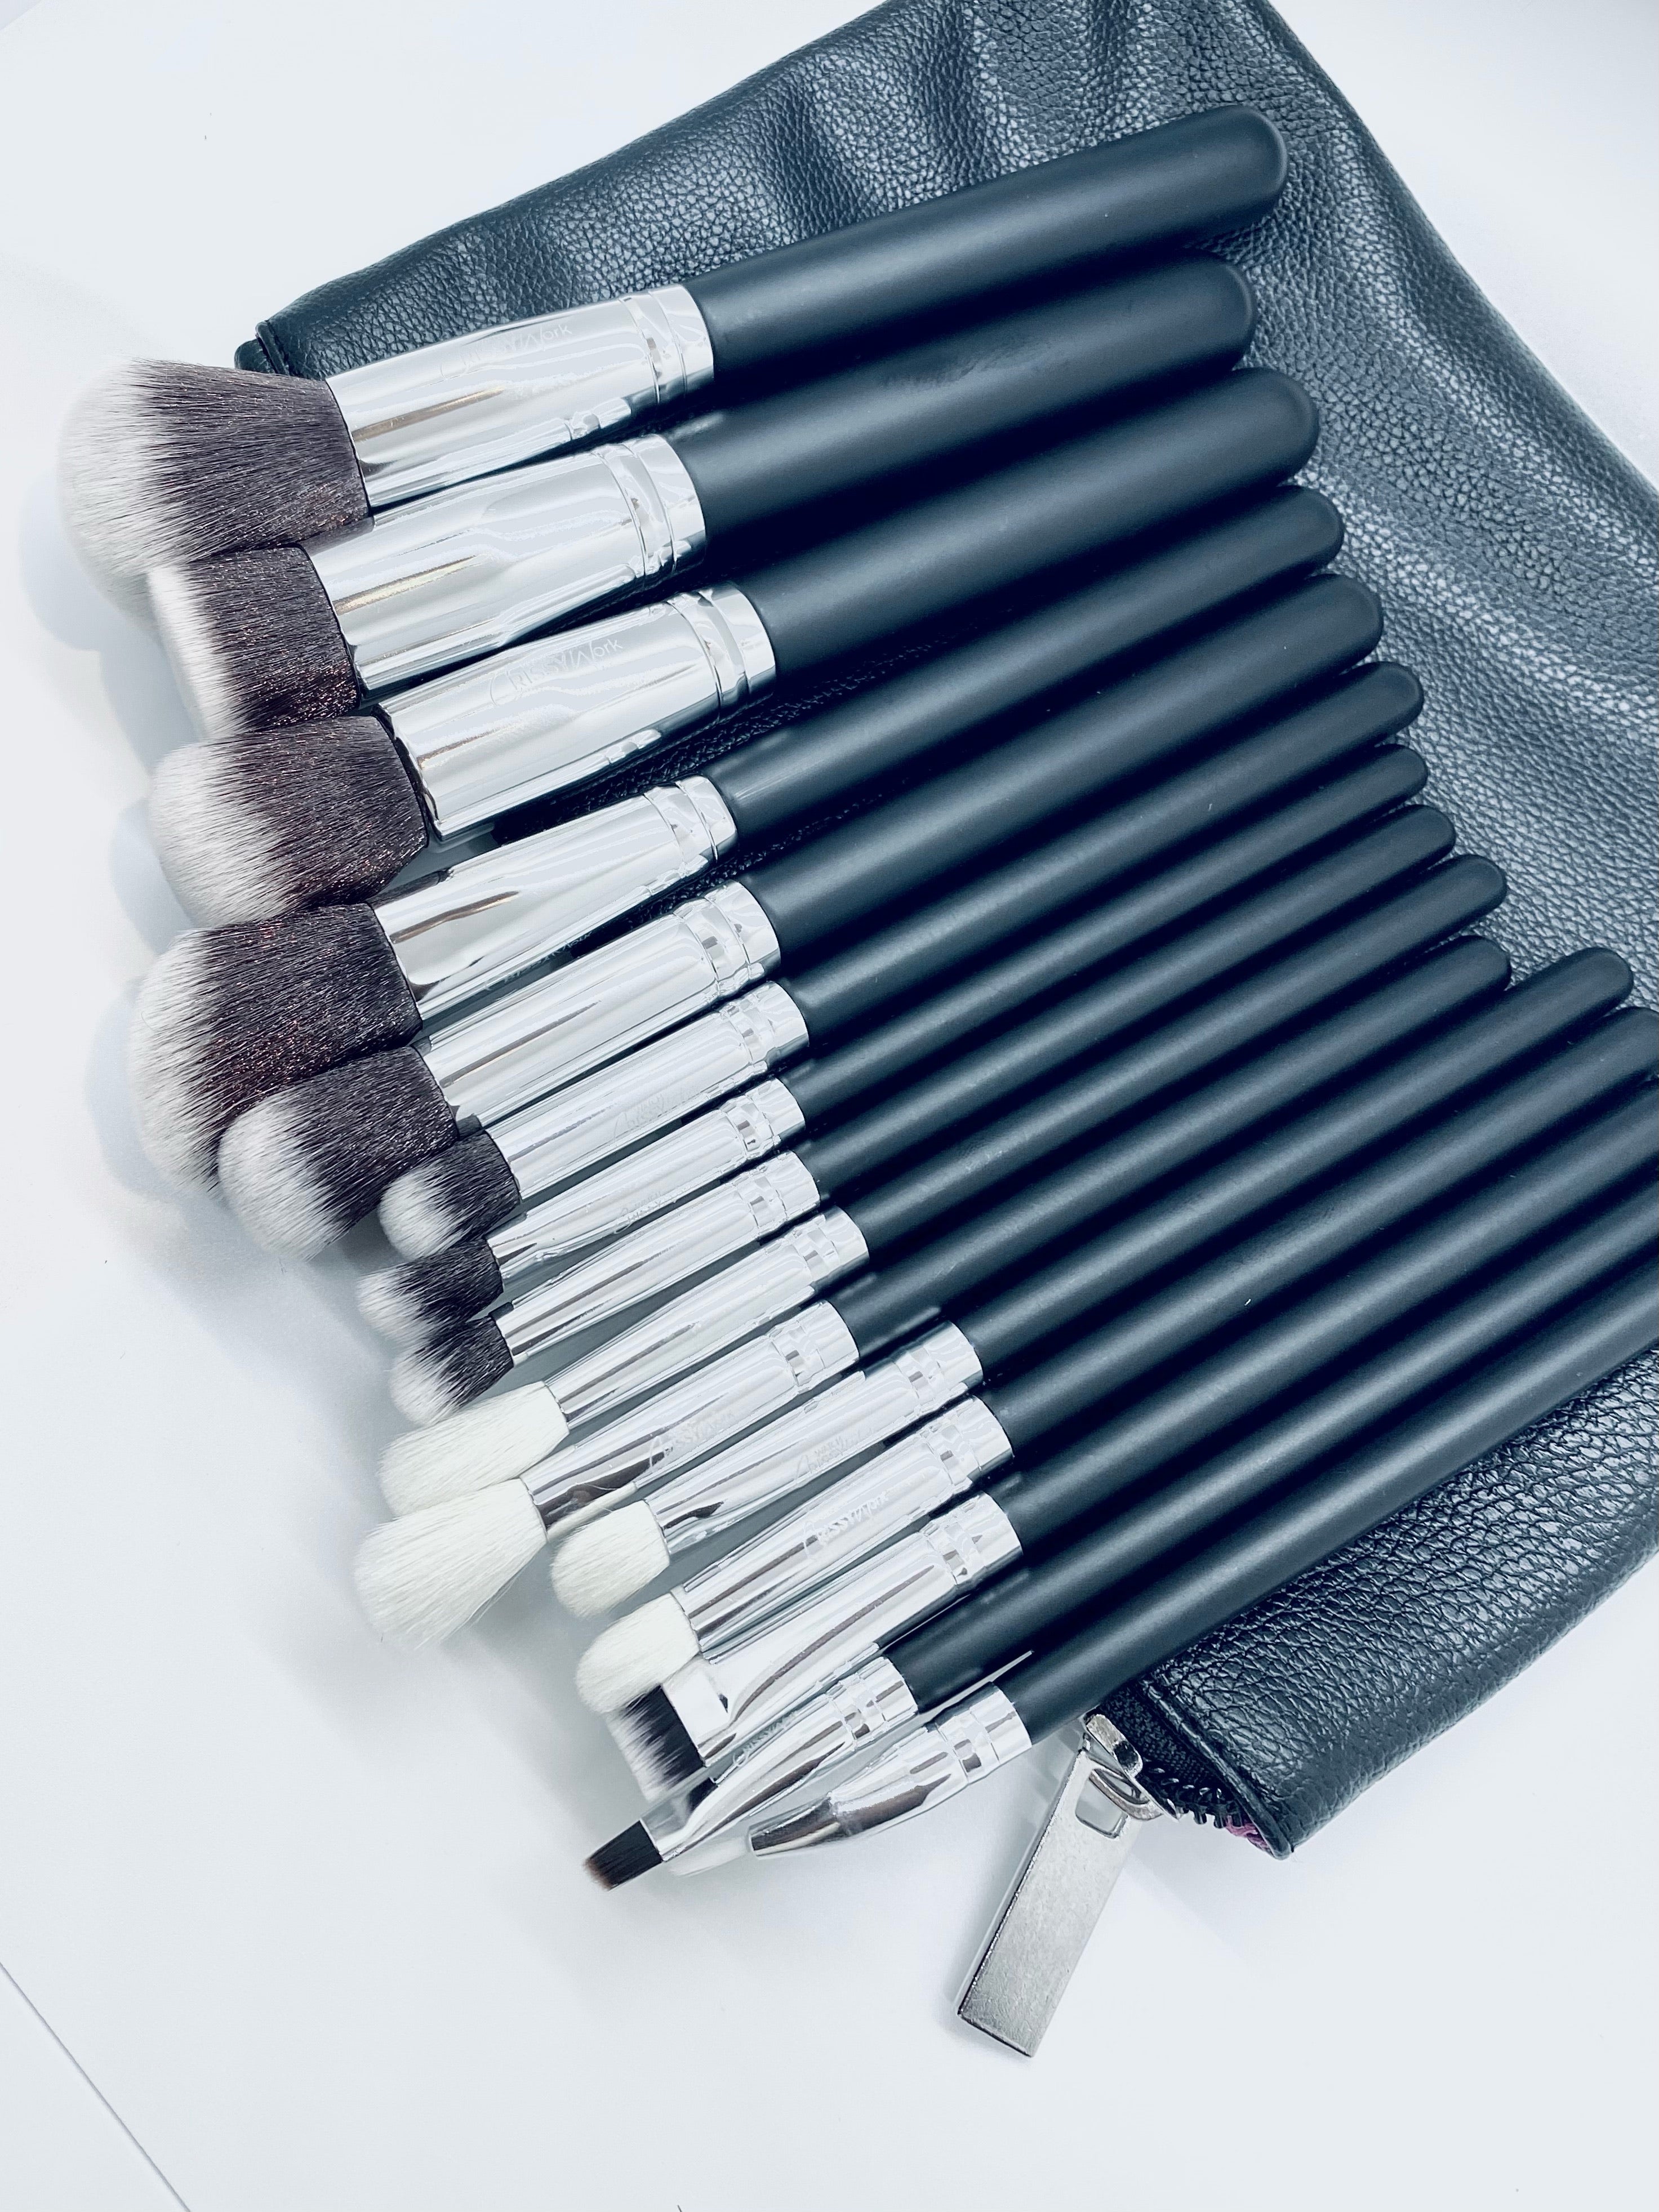 15 Piece Makeup Brushes (With Bag)